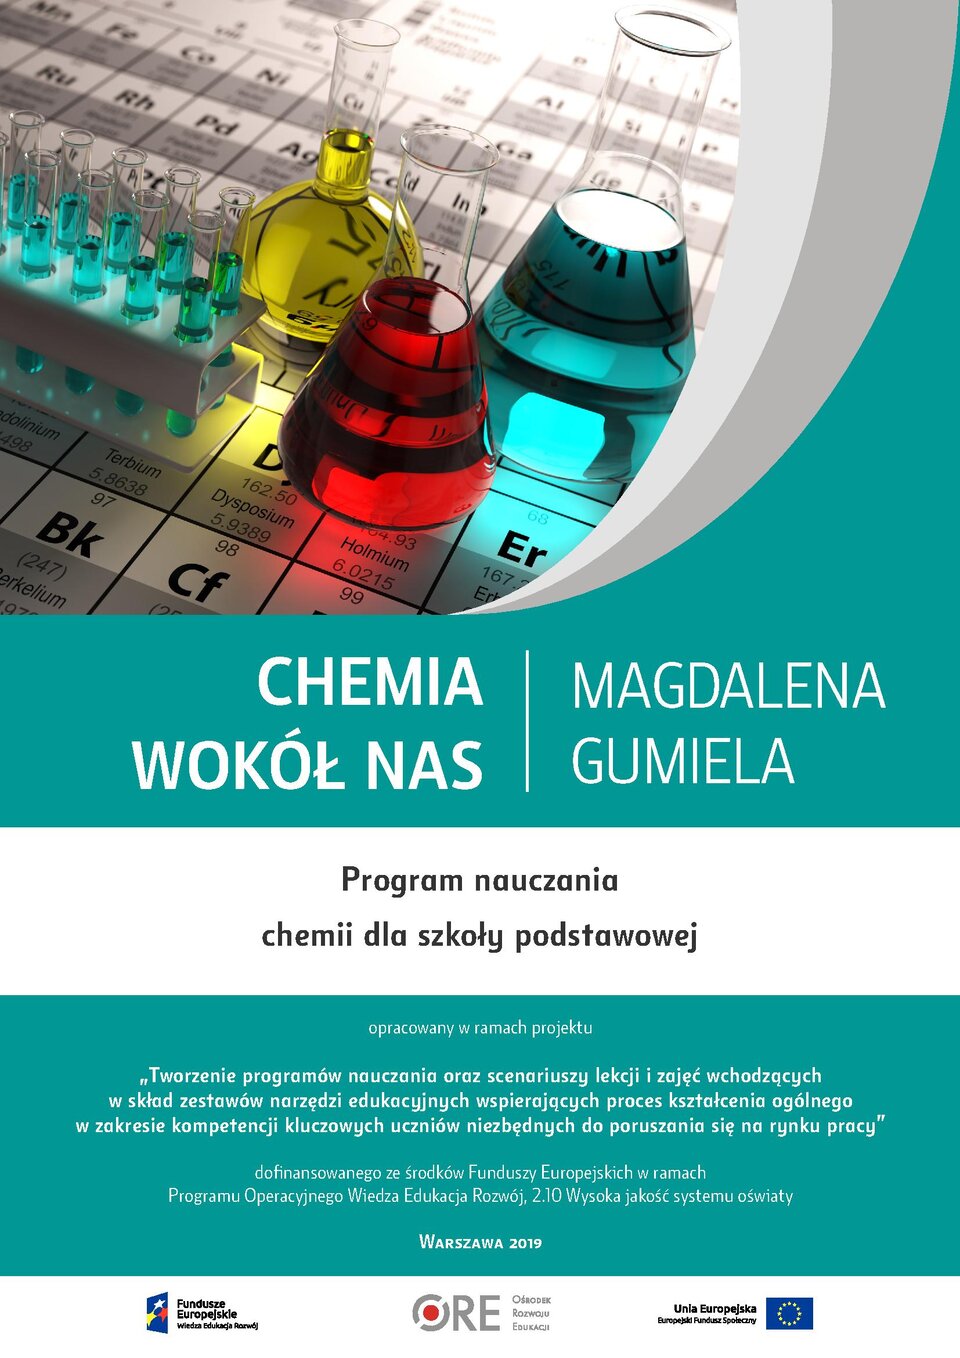 Pobierz plik: program-nauczania-chemii-pn.-chemia-wokol-nas (1).pdf